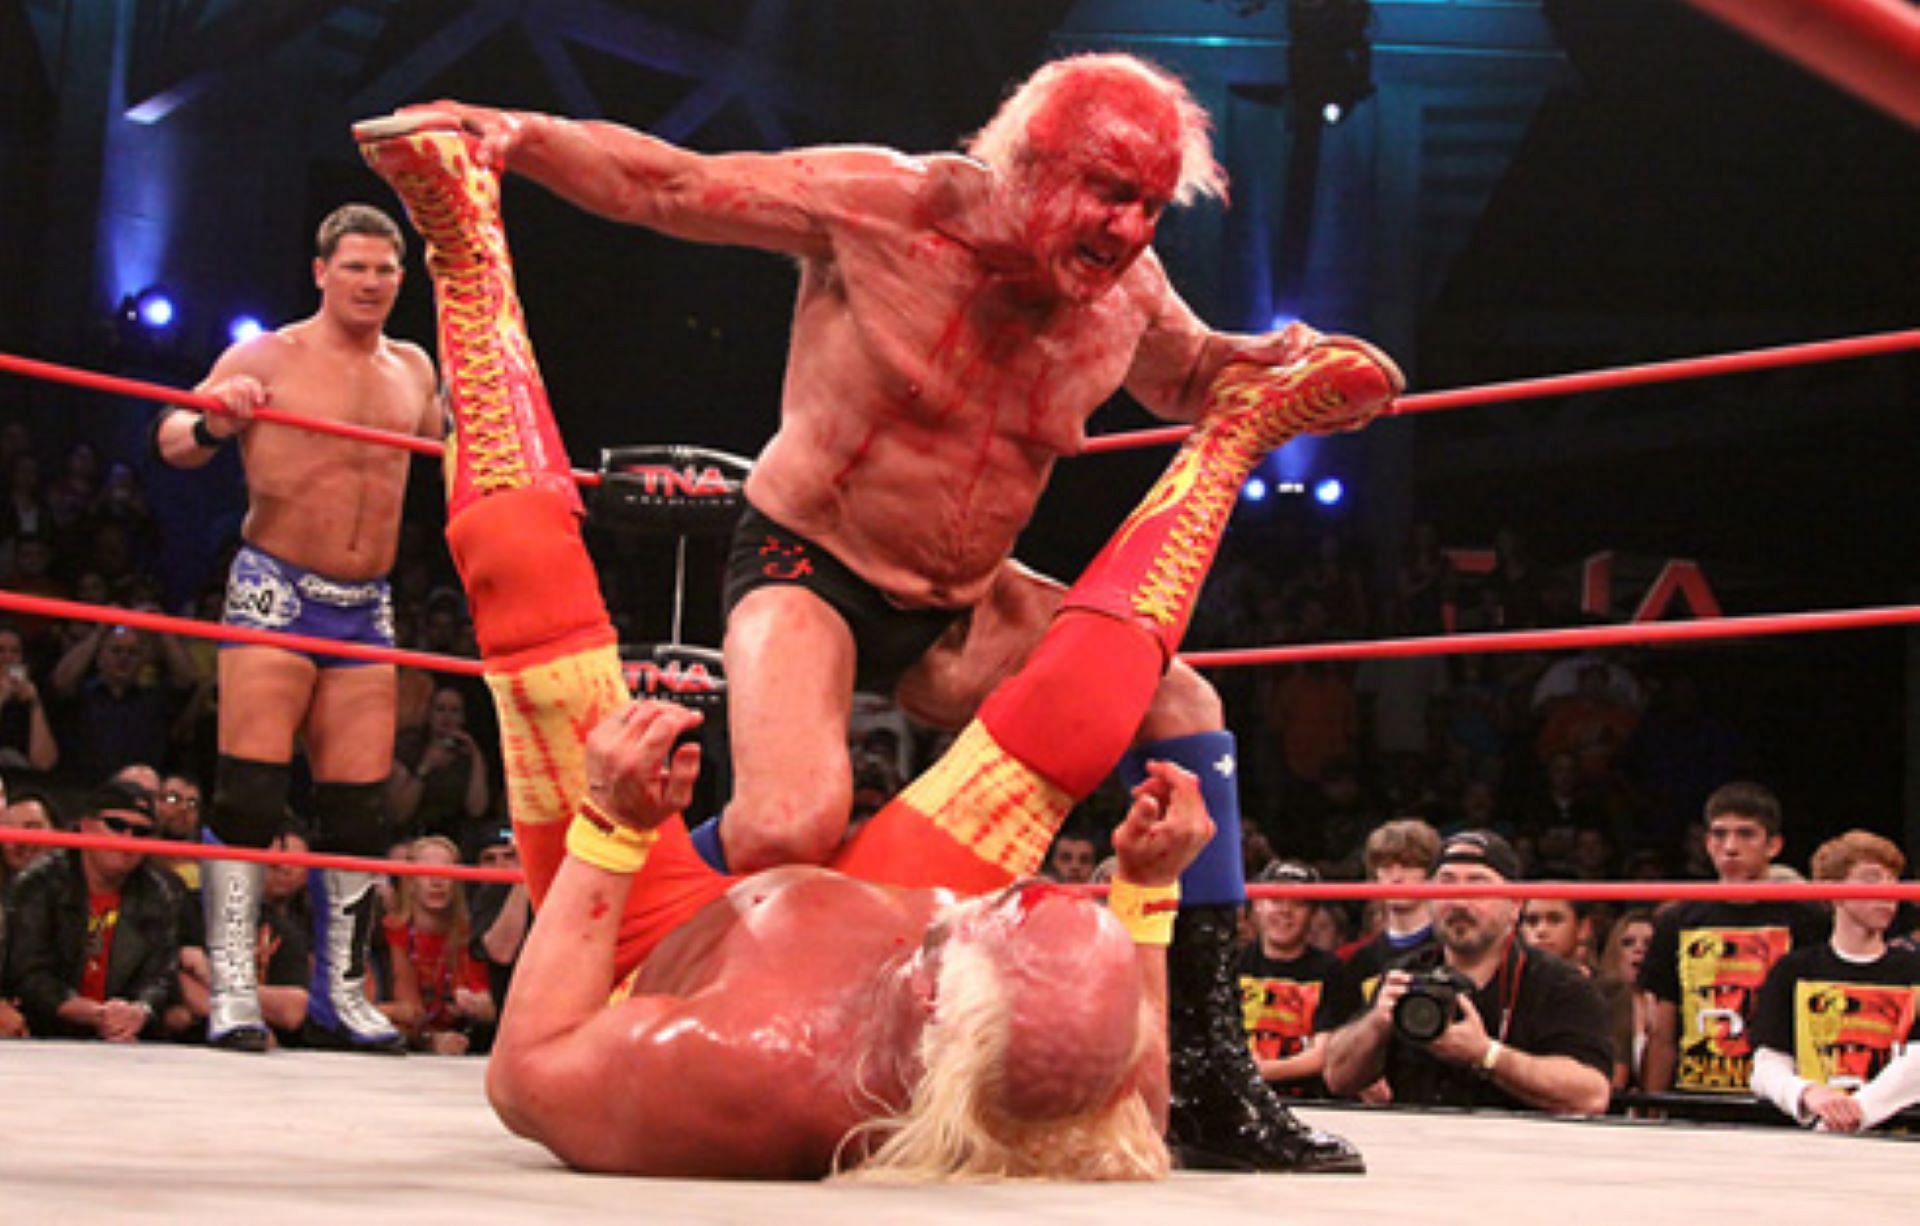 Ric Flair and Hulk Hogan facing off in TNA